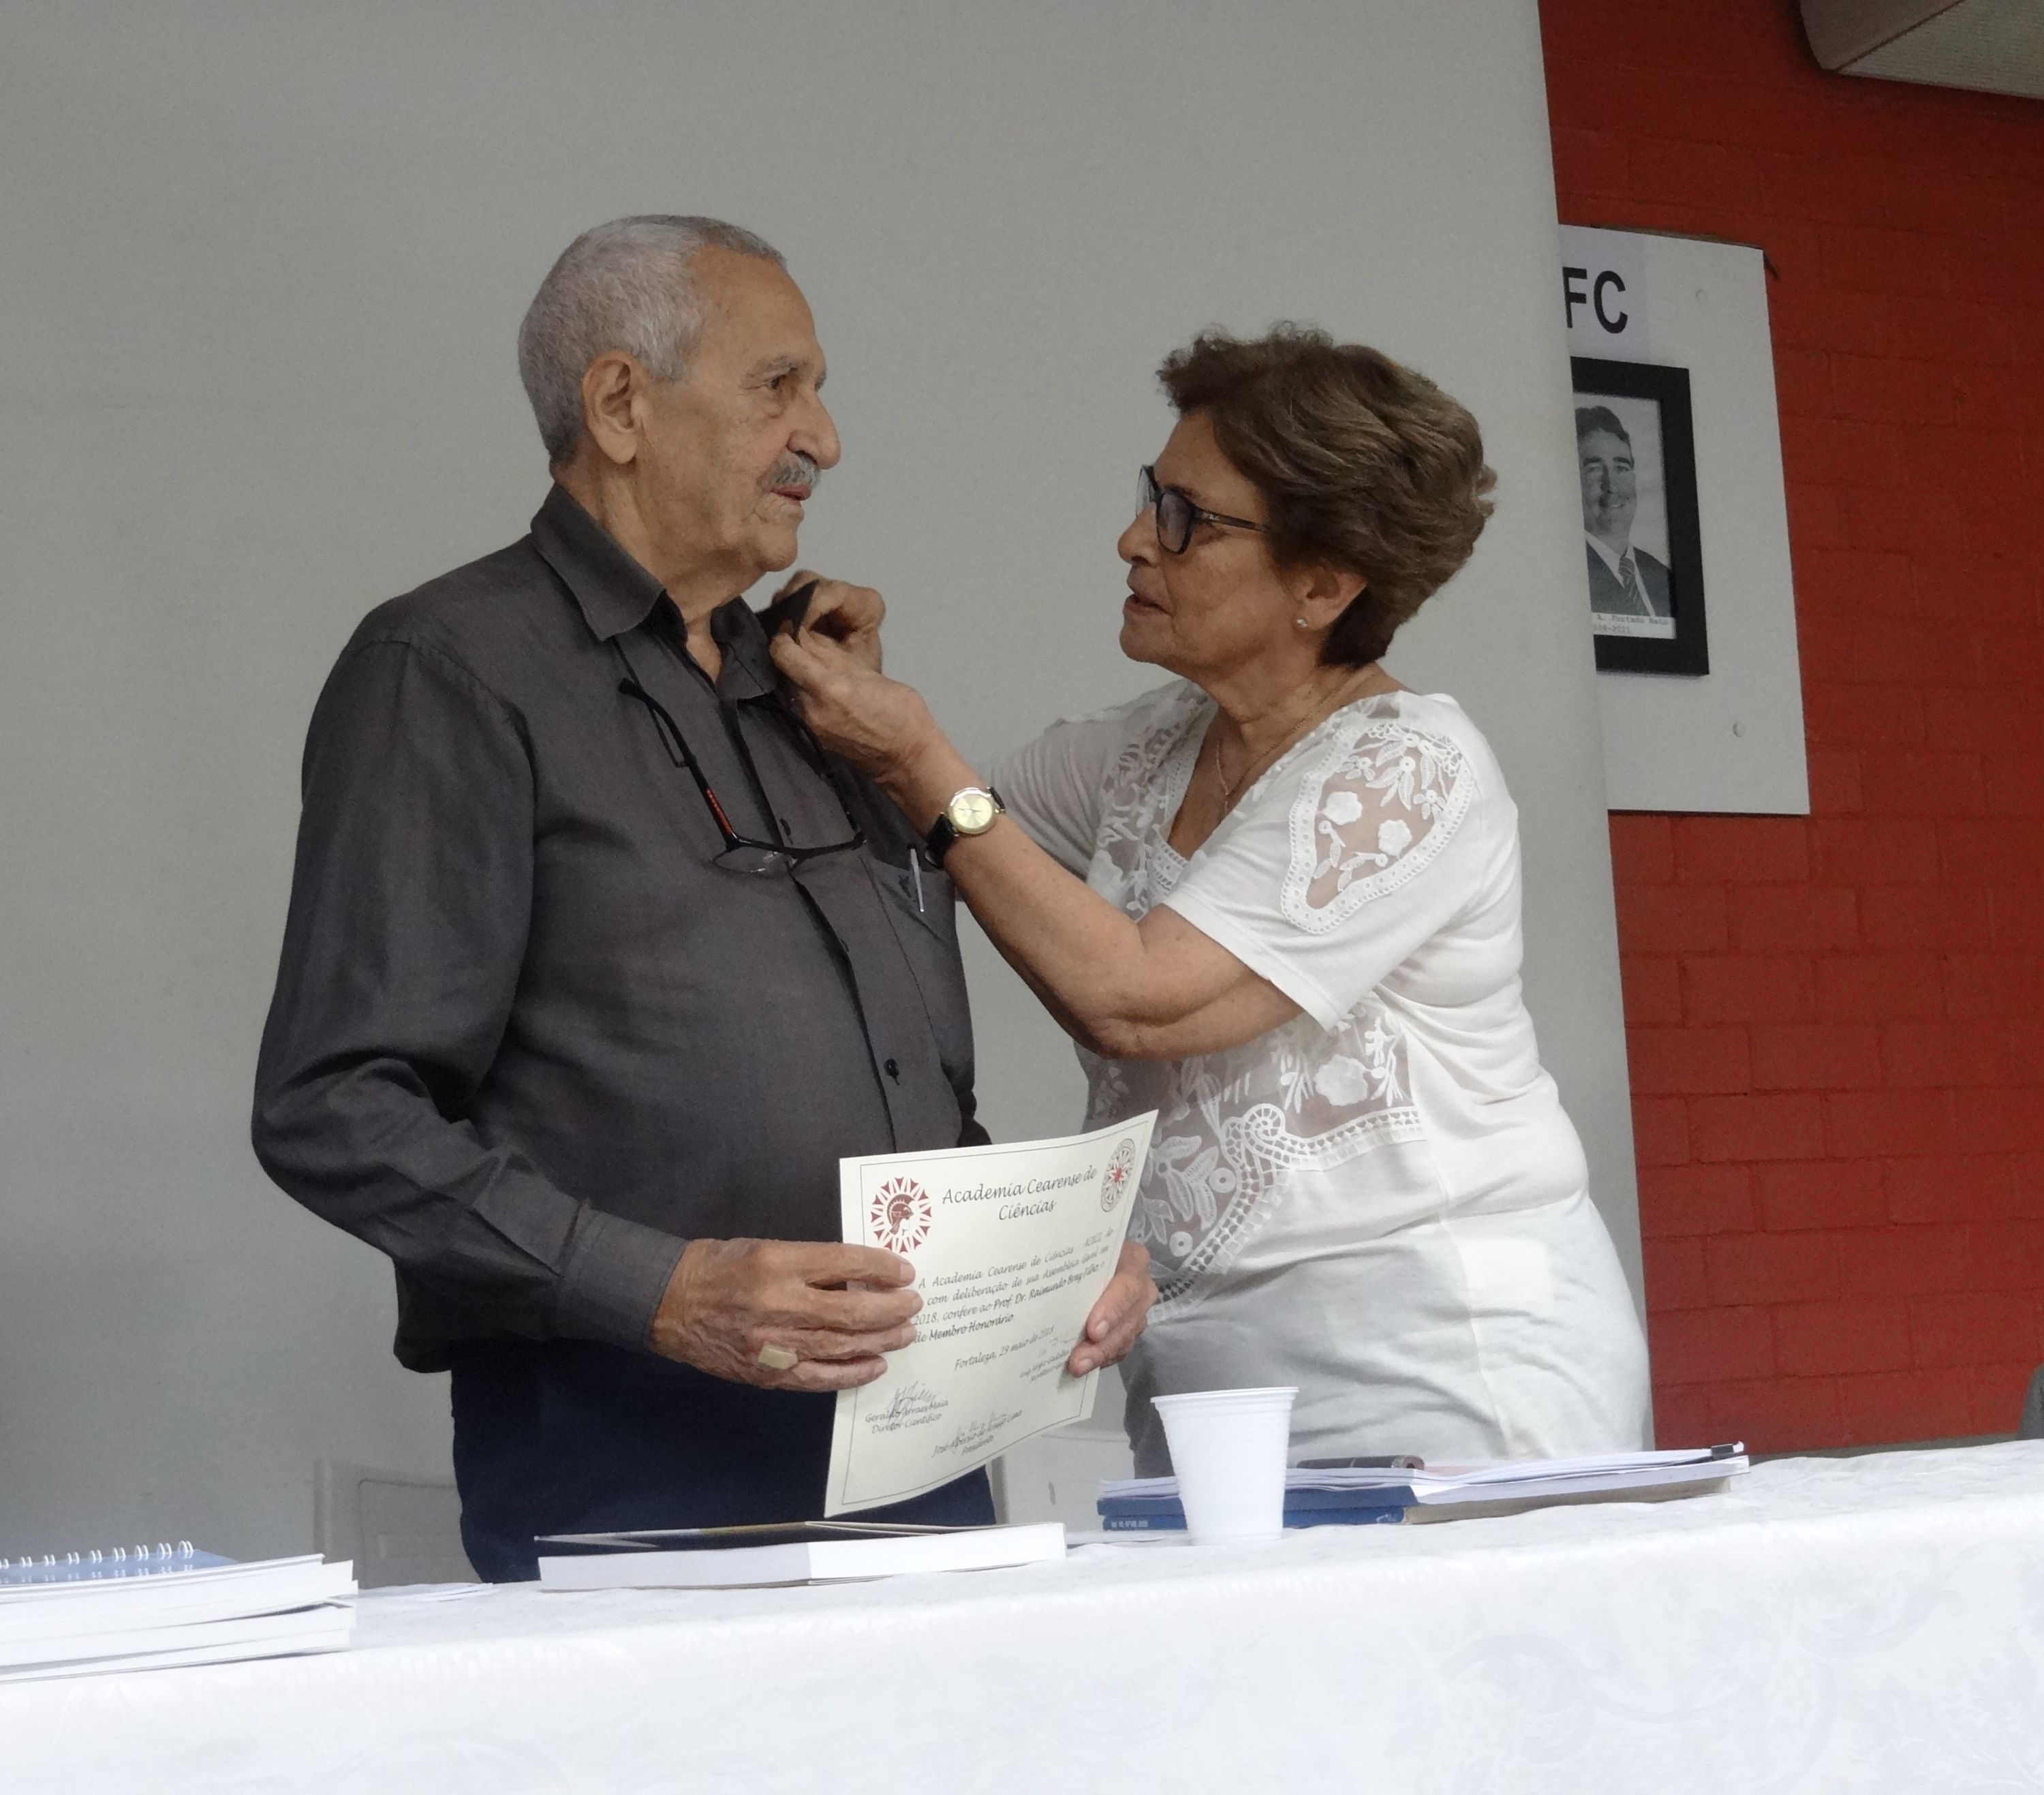 Profa. Glauce Barros Viana colocando o “Botam” da academia na lapela da camisa do agraciado.